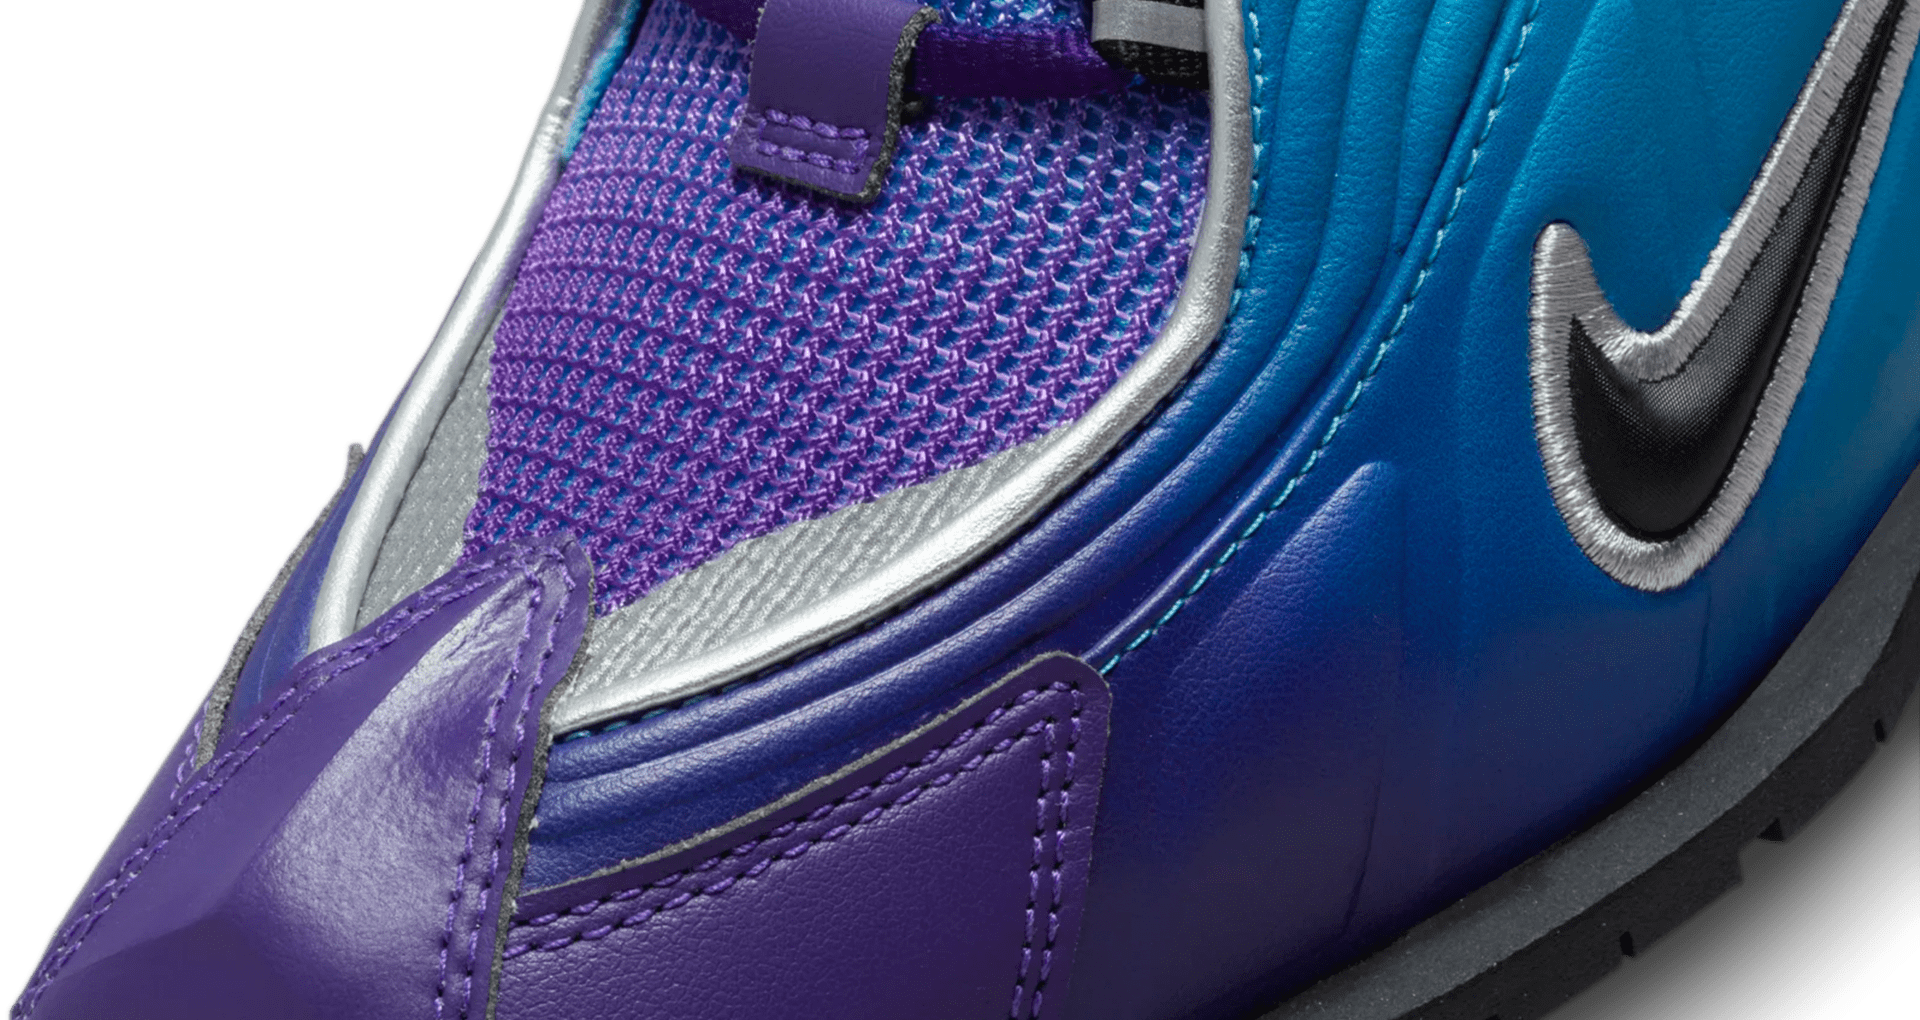 Shox MR4 x Martine Rose 'Scuba Blue' (DQ2401-400) Release Date . Nike